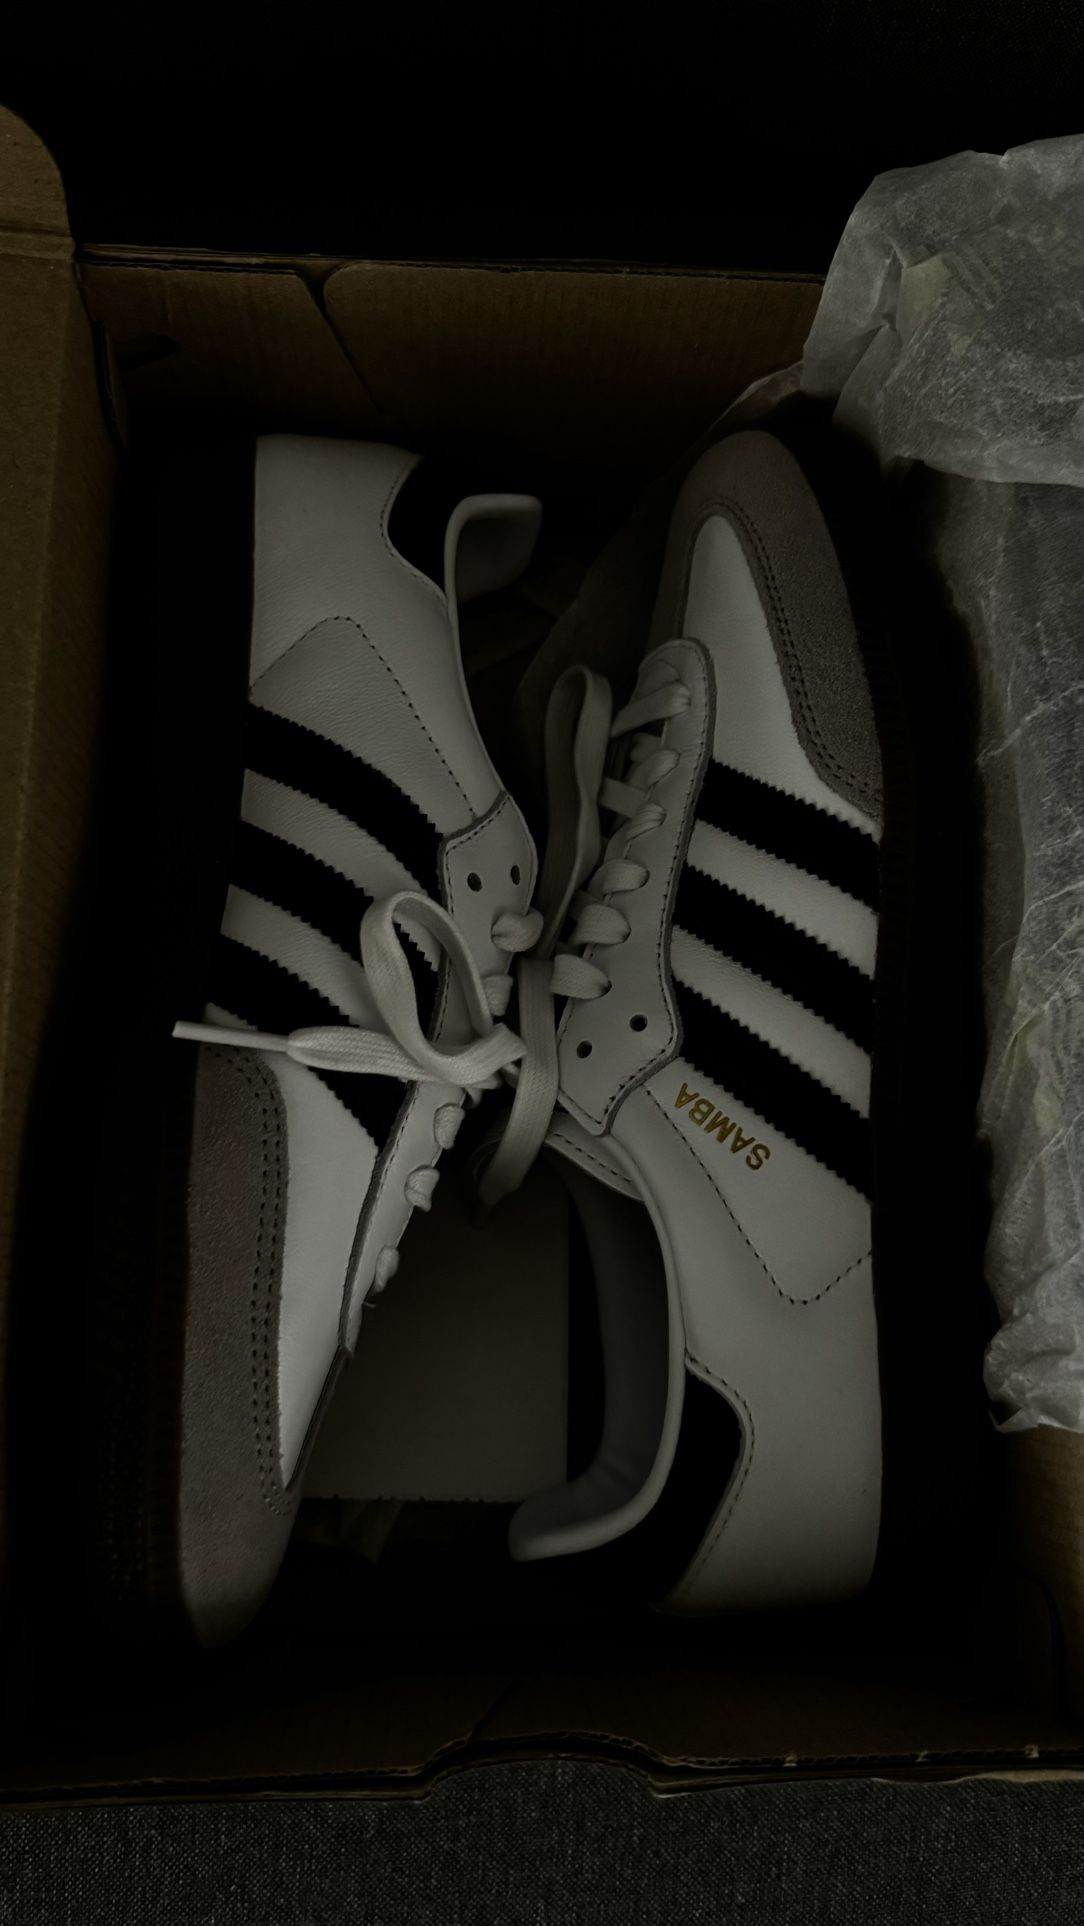 Adidas Samba Size 6.5Y/7.5W